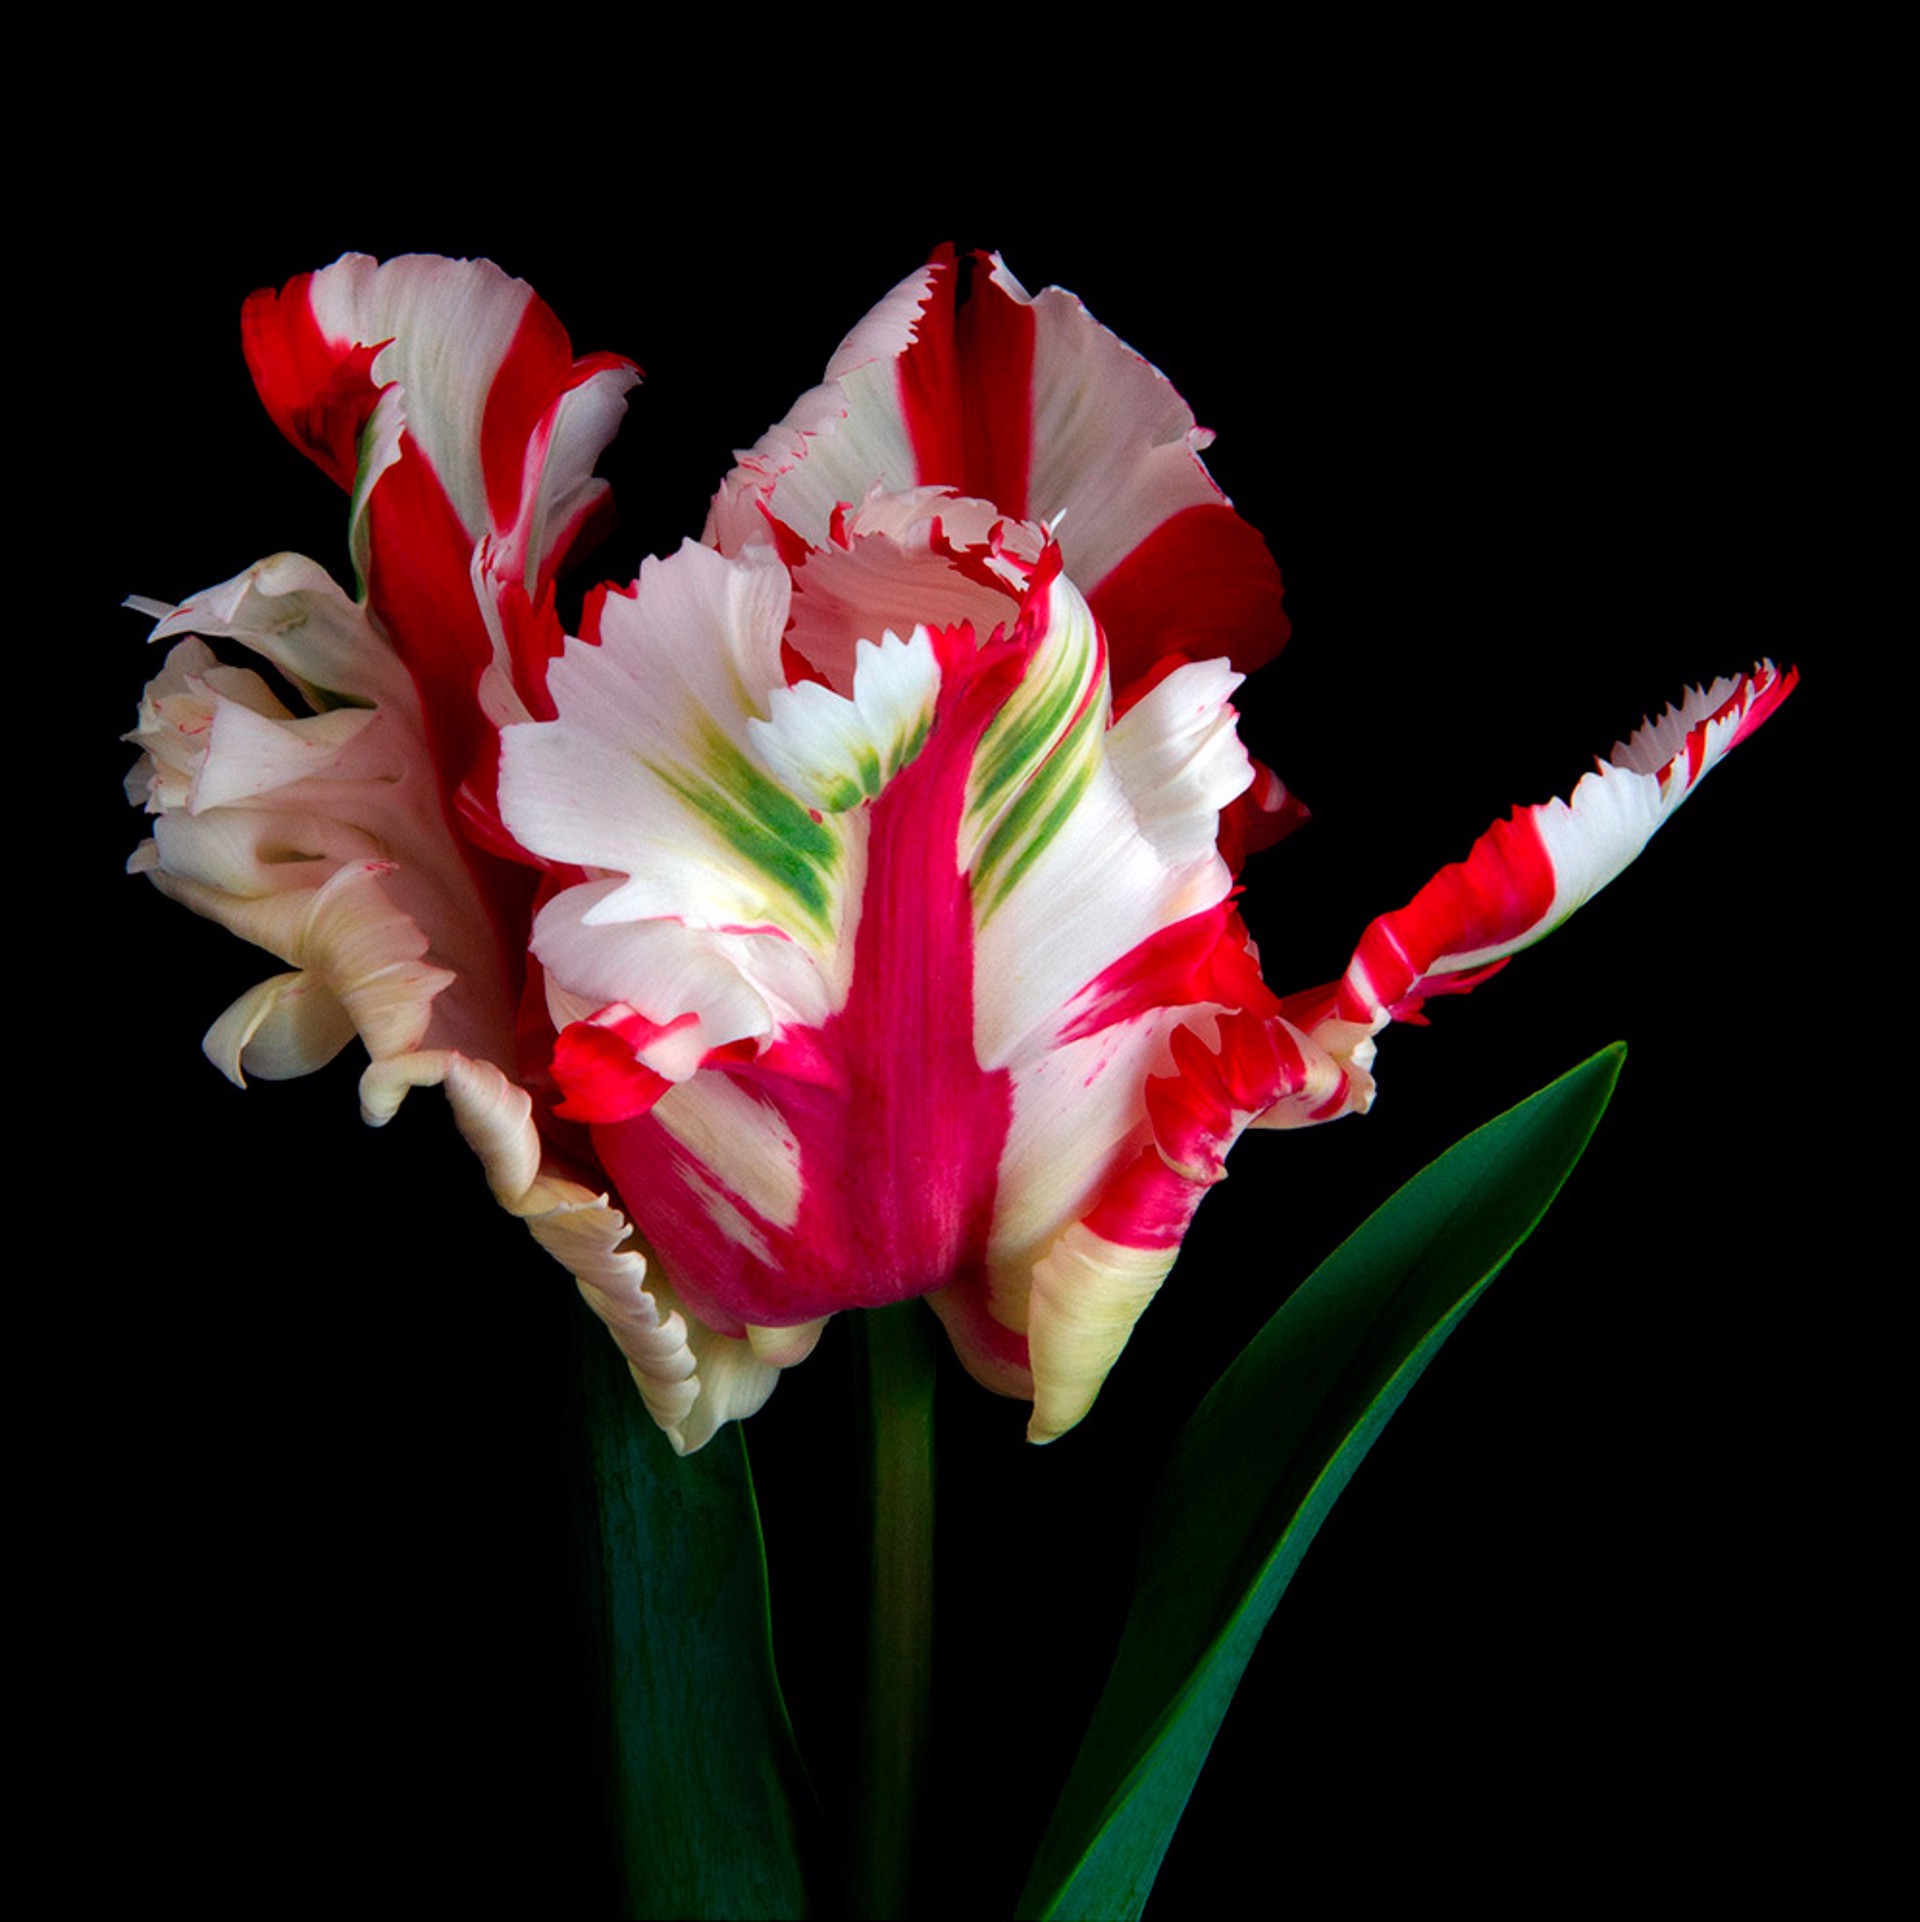 Estella Rjinveld Tulip, 2618 by Molly Wood